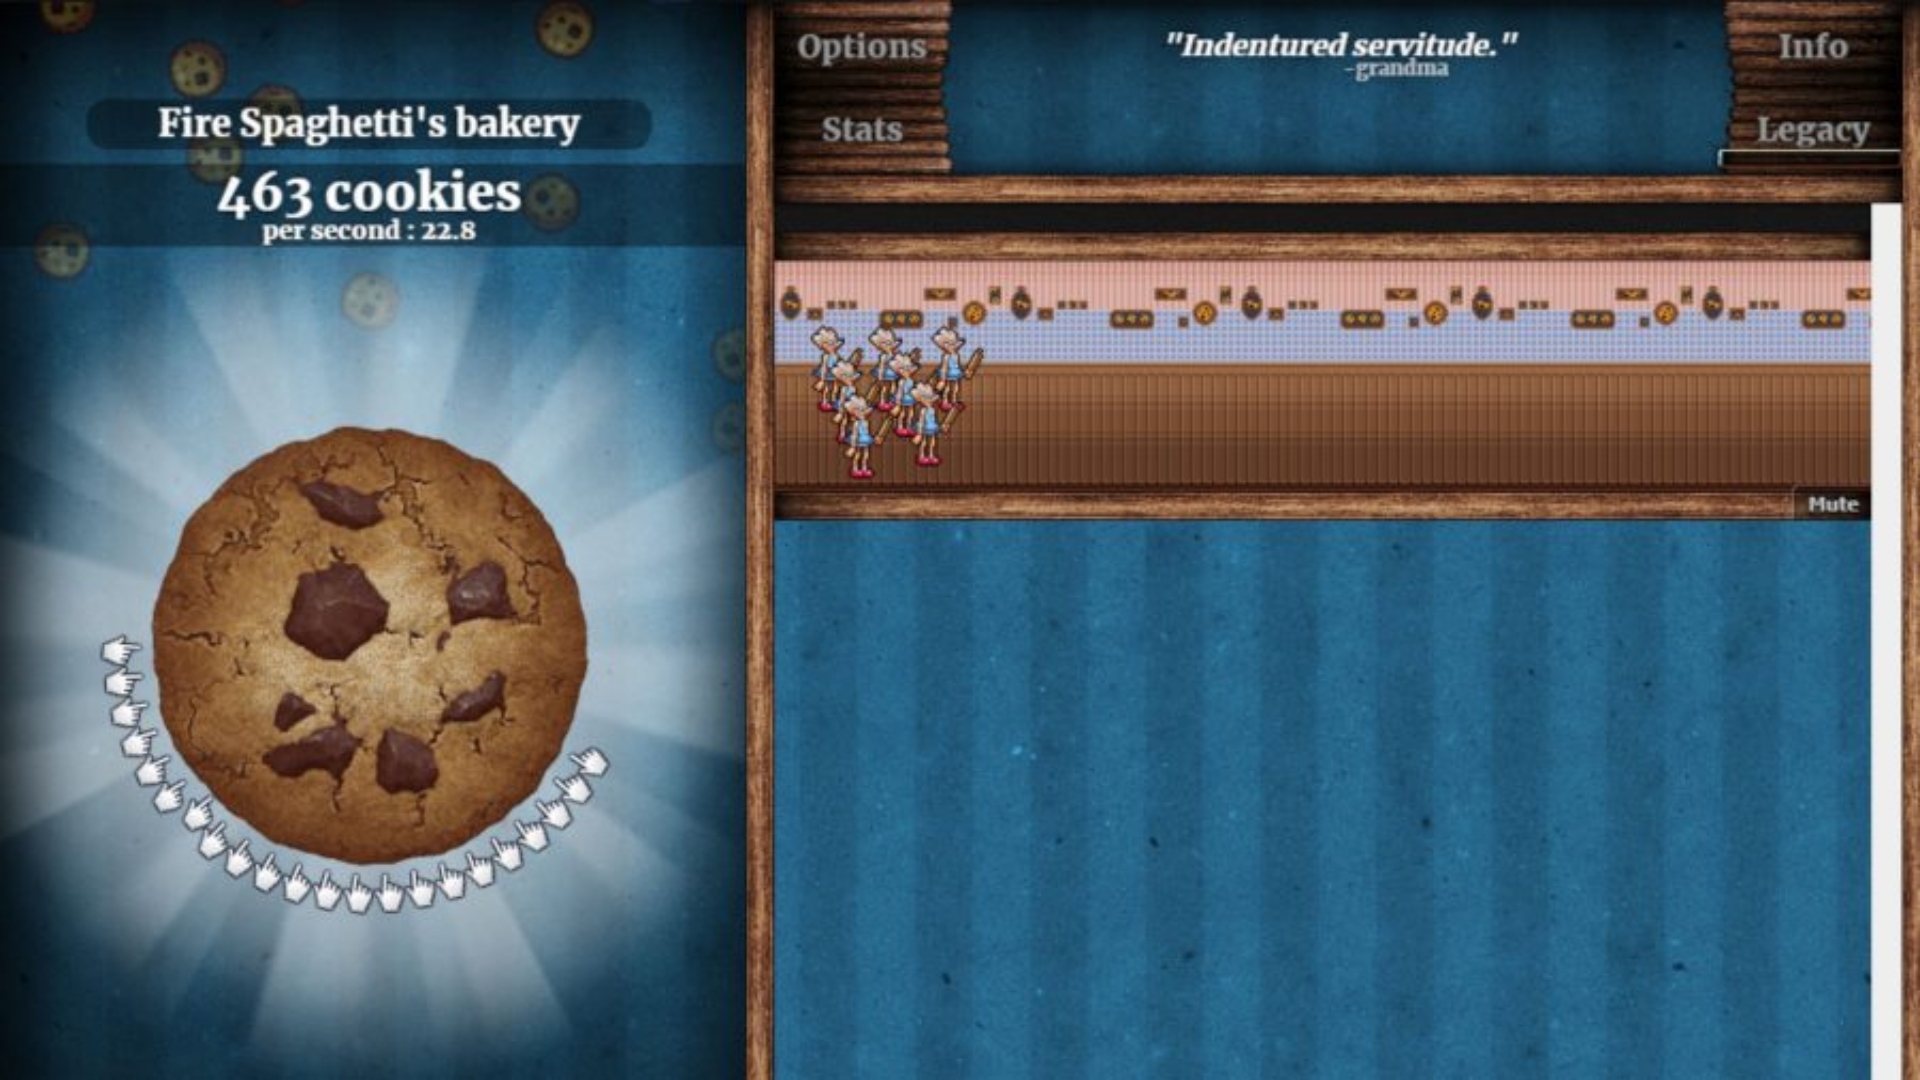 משחקים מקוונים: קליק עוגיות. תמונה מציגה עוגיה ענקית וקצת הפקת עוגיות